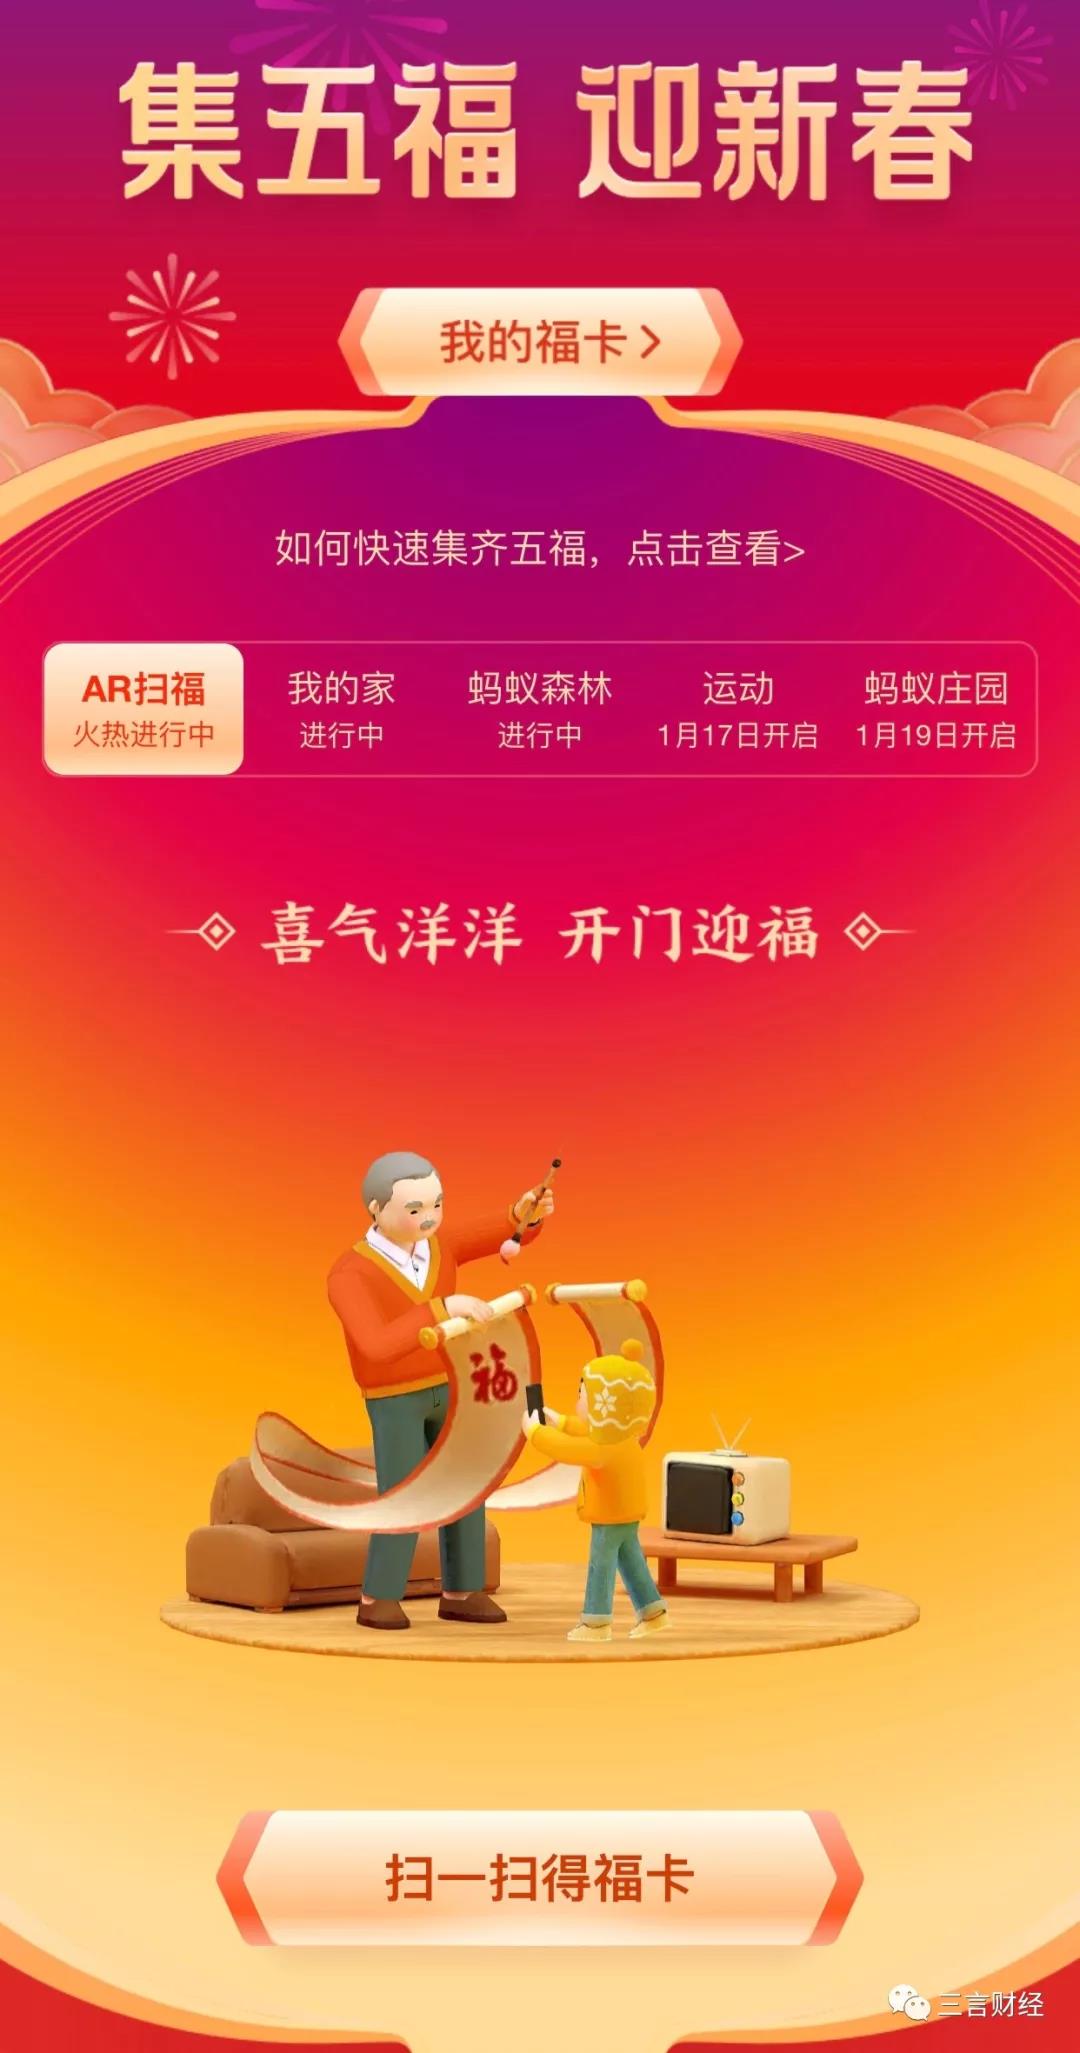 互联网春节红包大战PK：谁最“实诚”？谁最“难”？